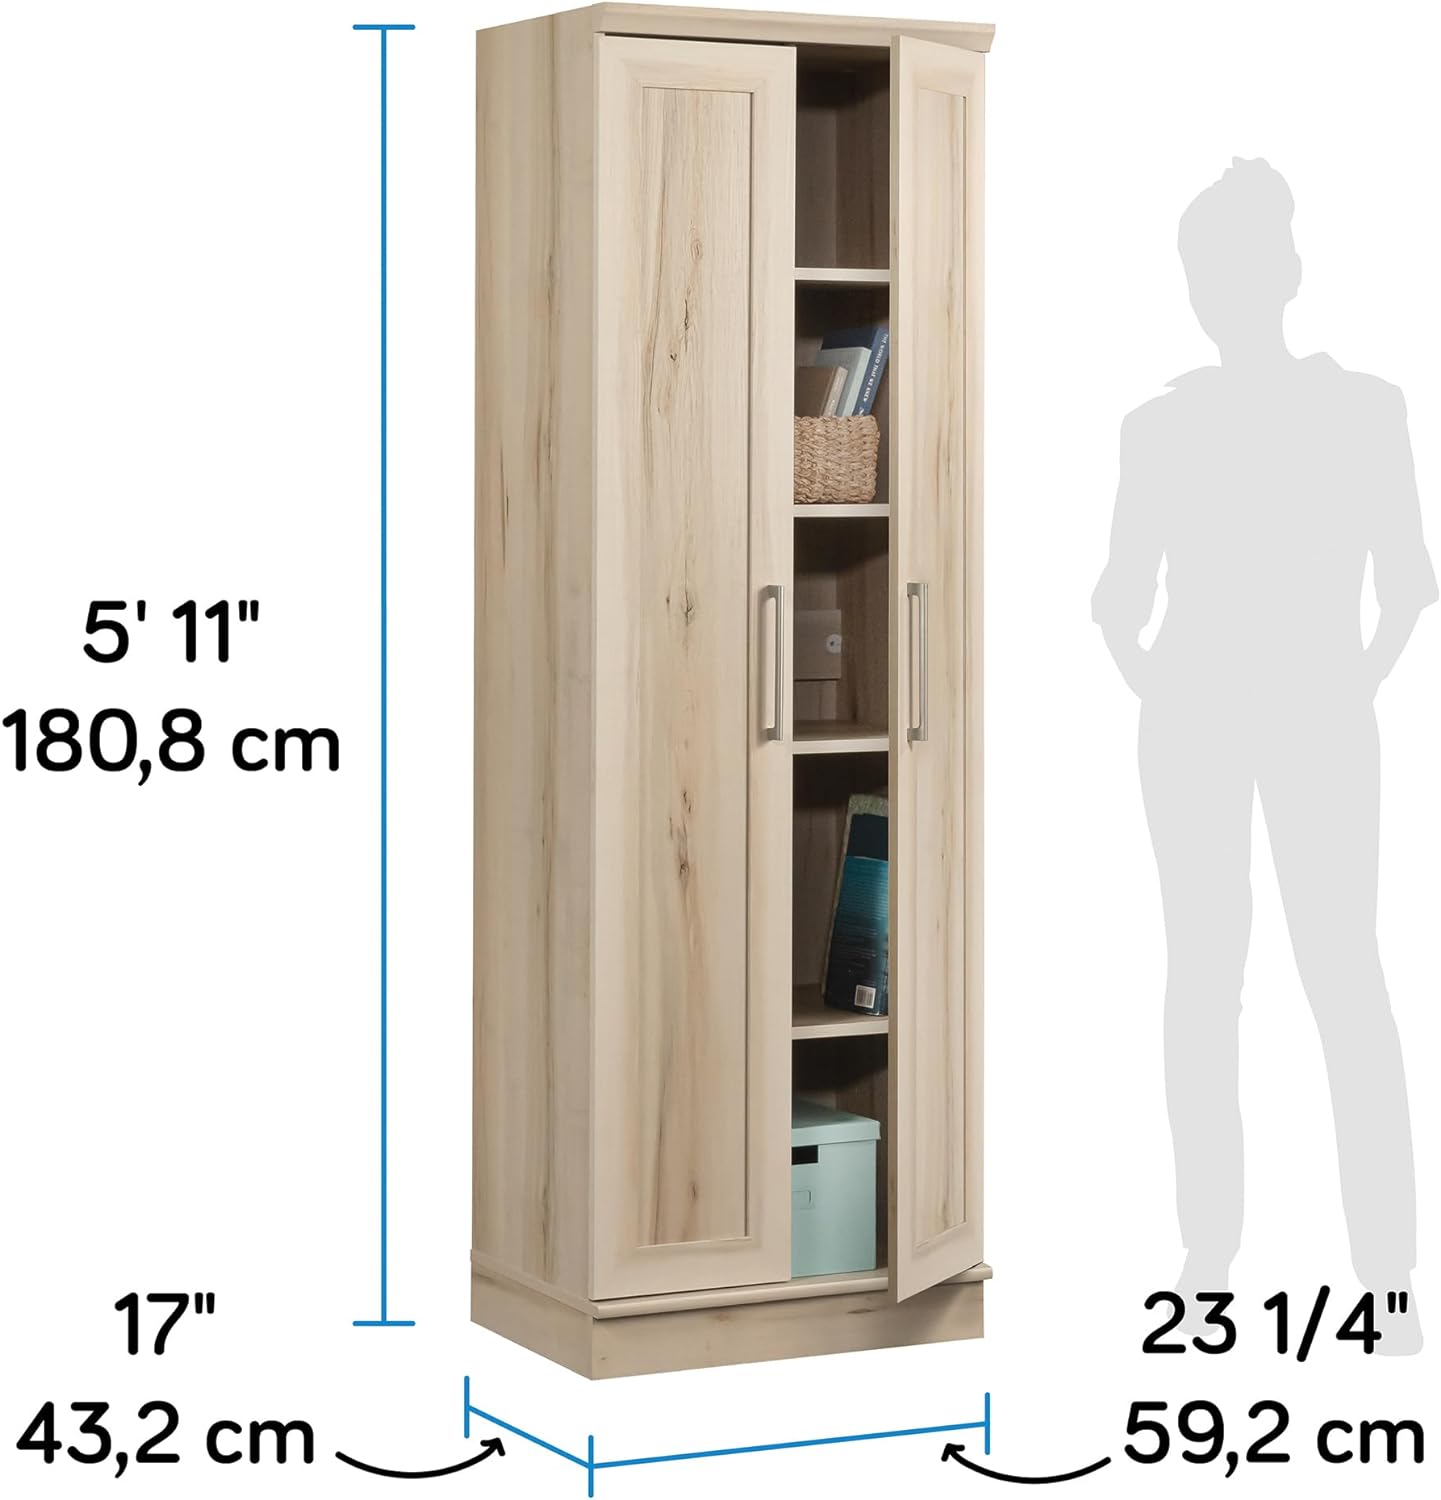 Sauder HomePlus Sienna Oak Storage Cabinet